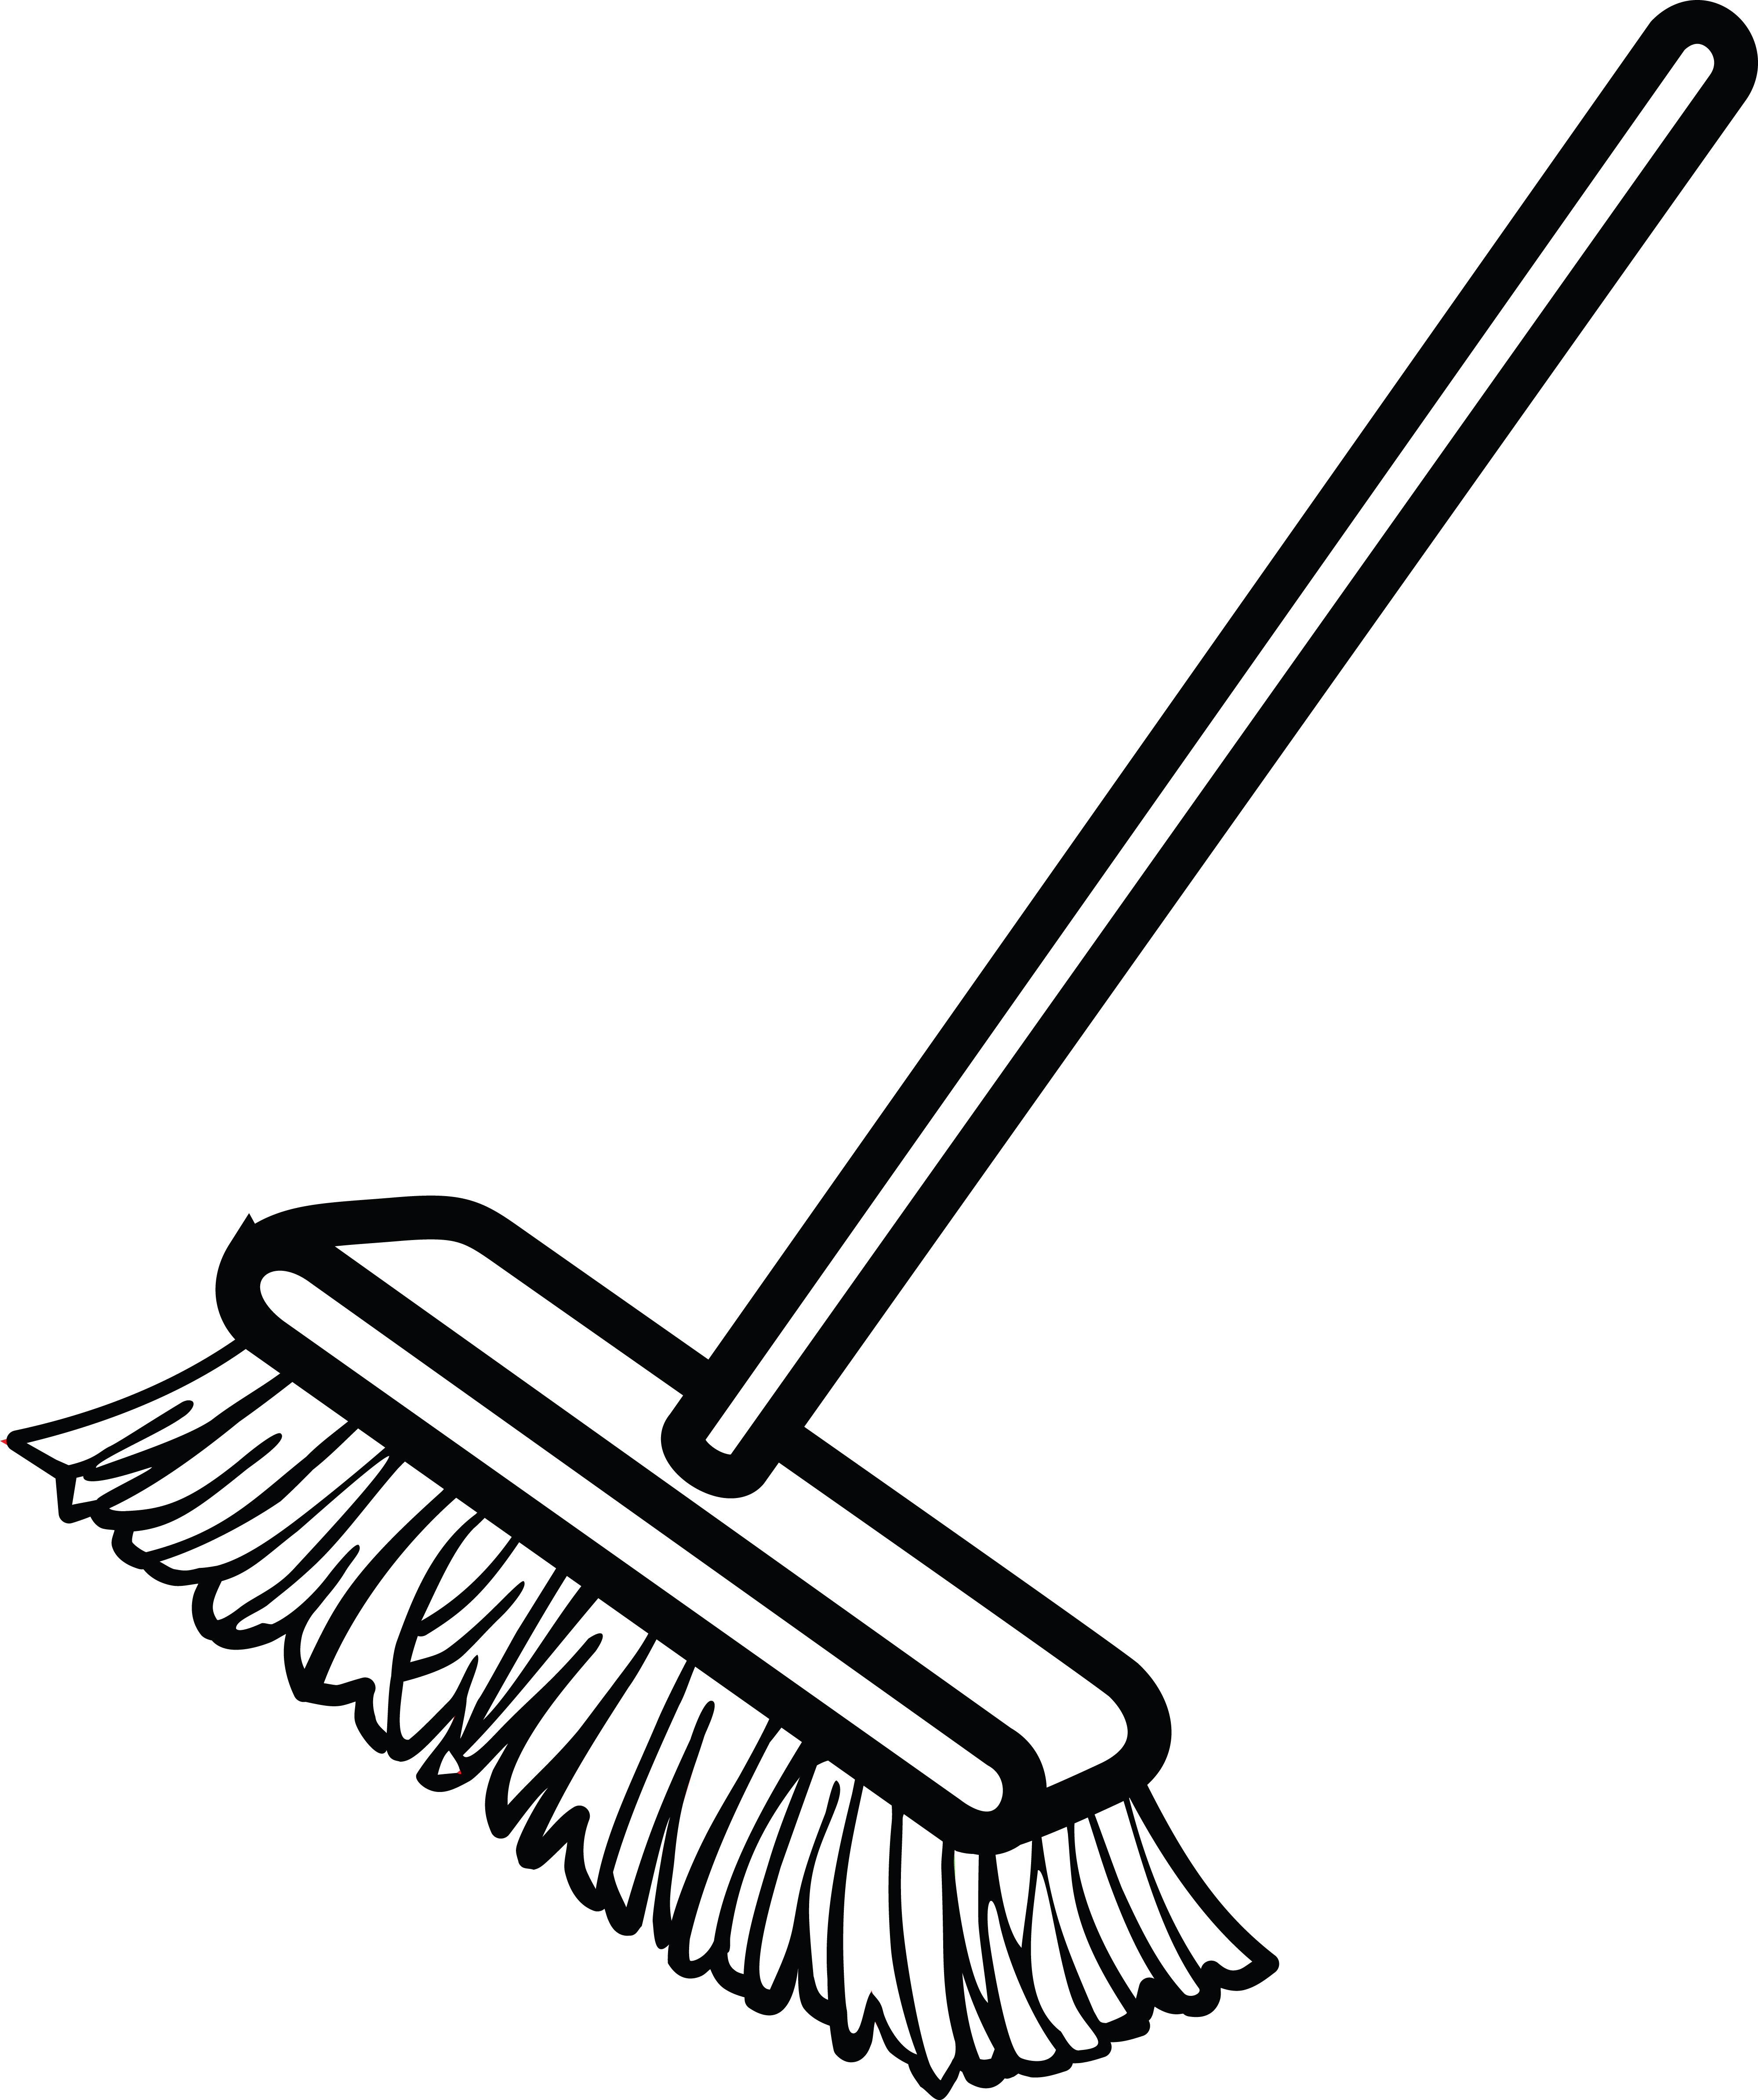 Broom Sweeping Dust - Royalty